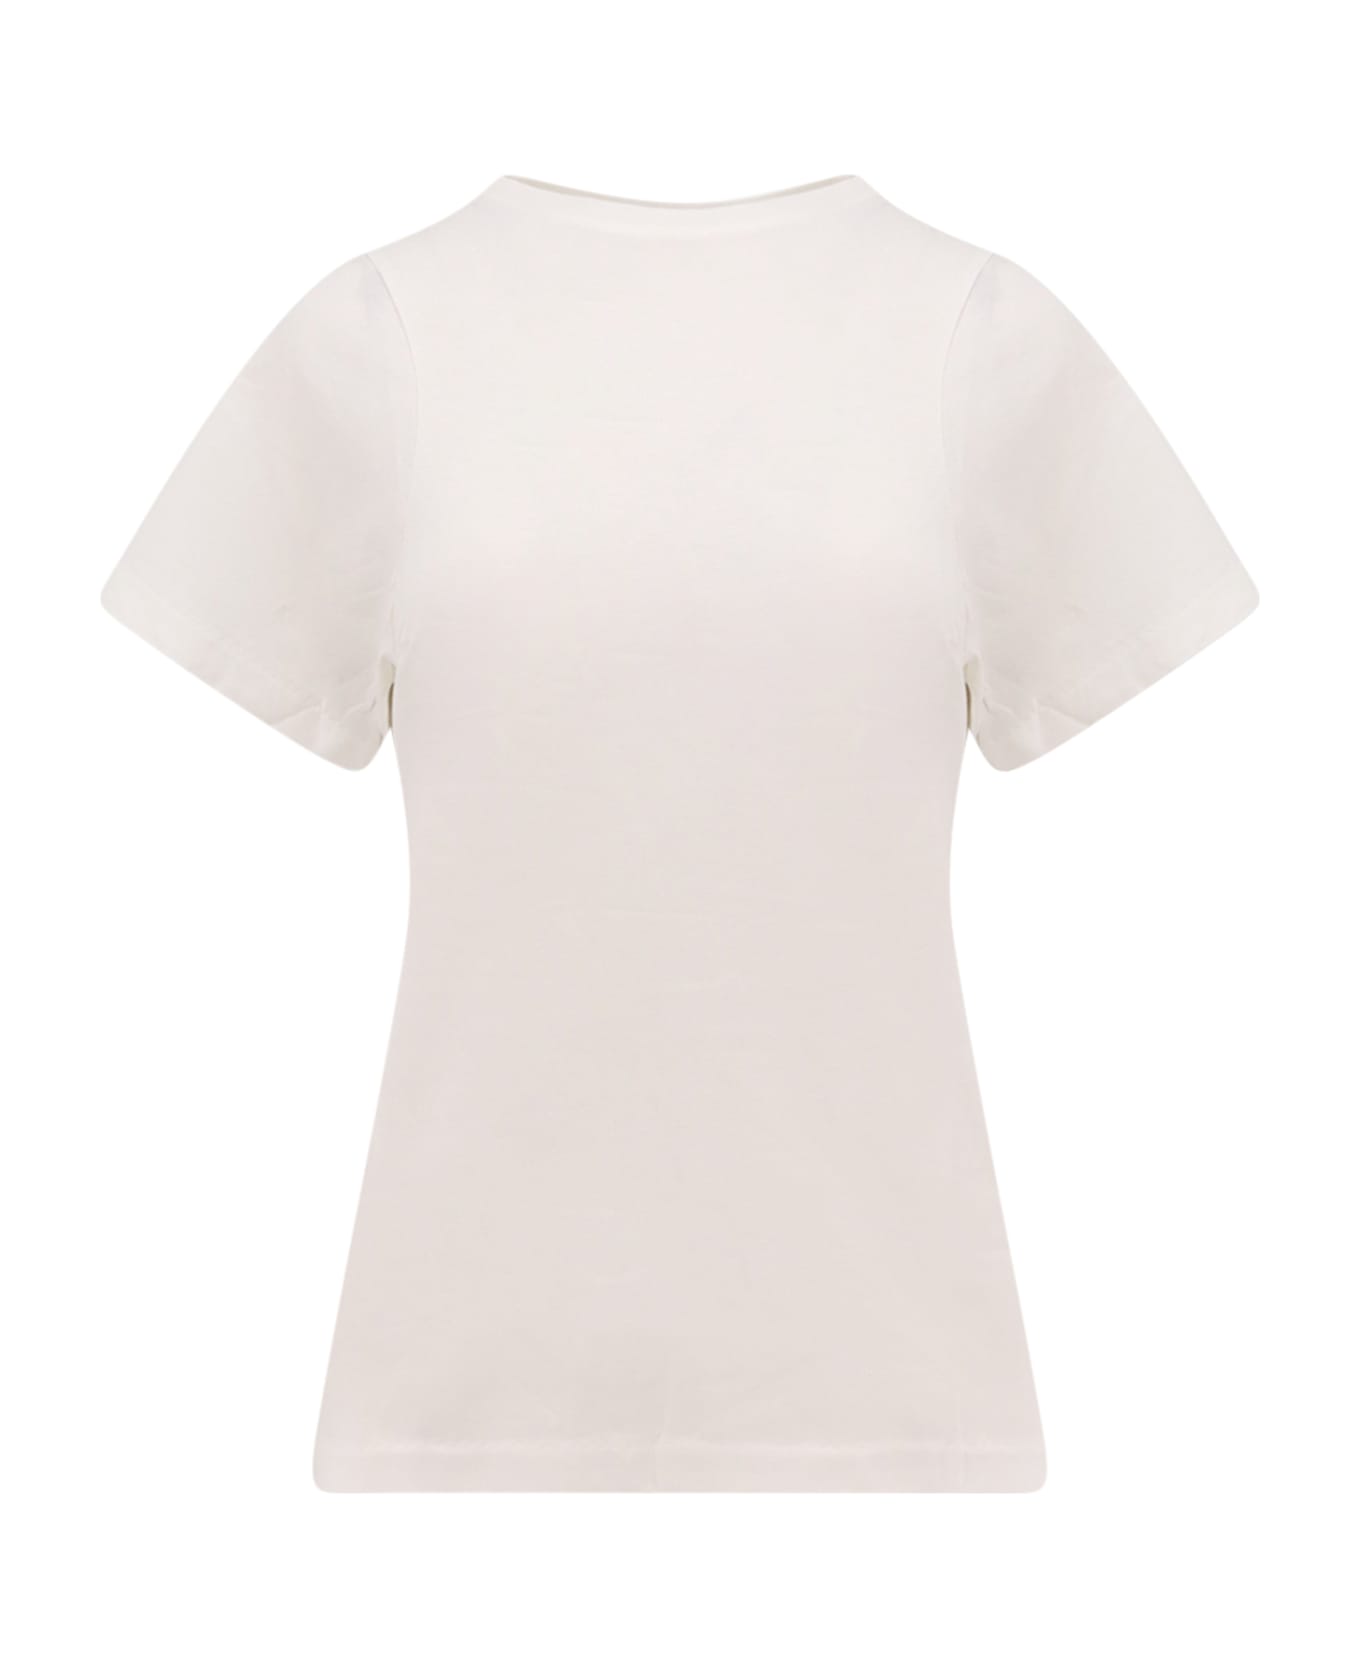 Totême T-shirt - White